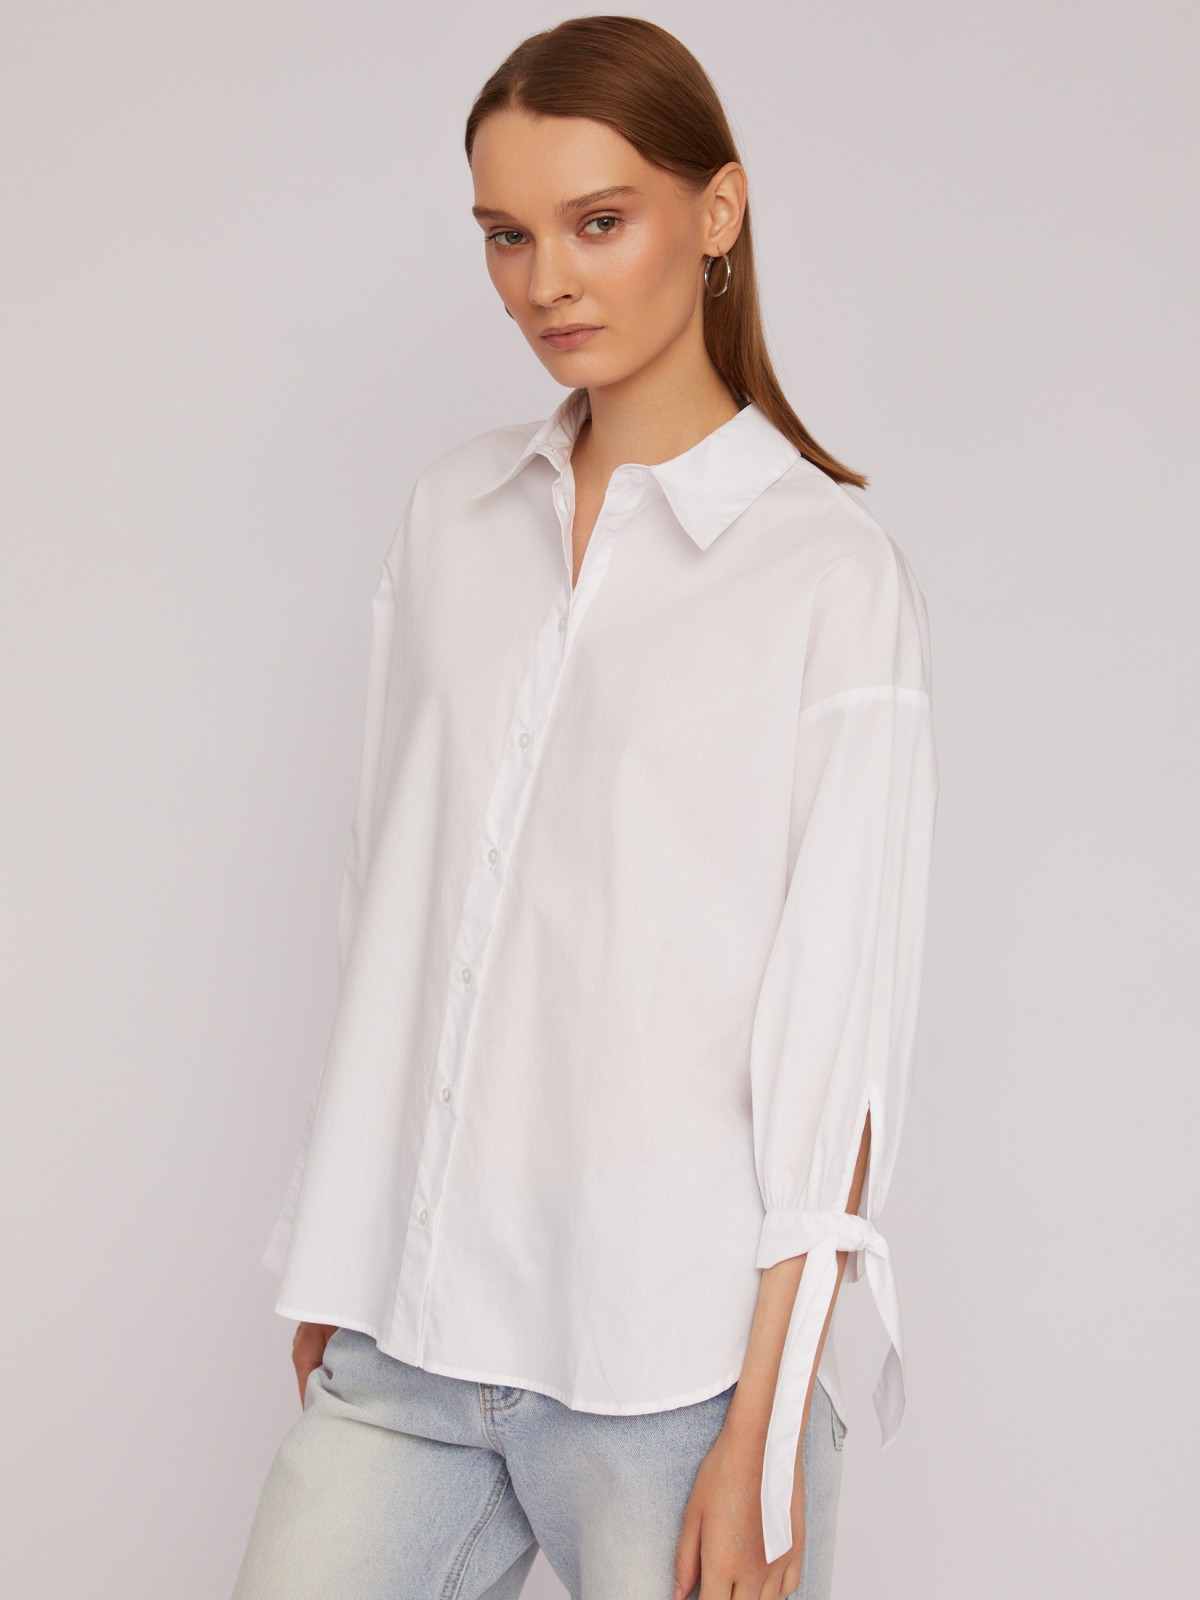 Рубашка из хлопка оверсайз силуэта с акцентными манжетами zolla 024211159033, цвет белый, размер XS